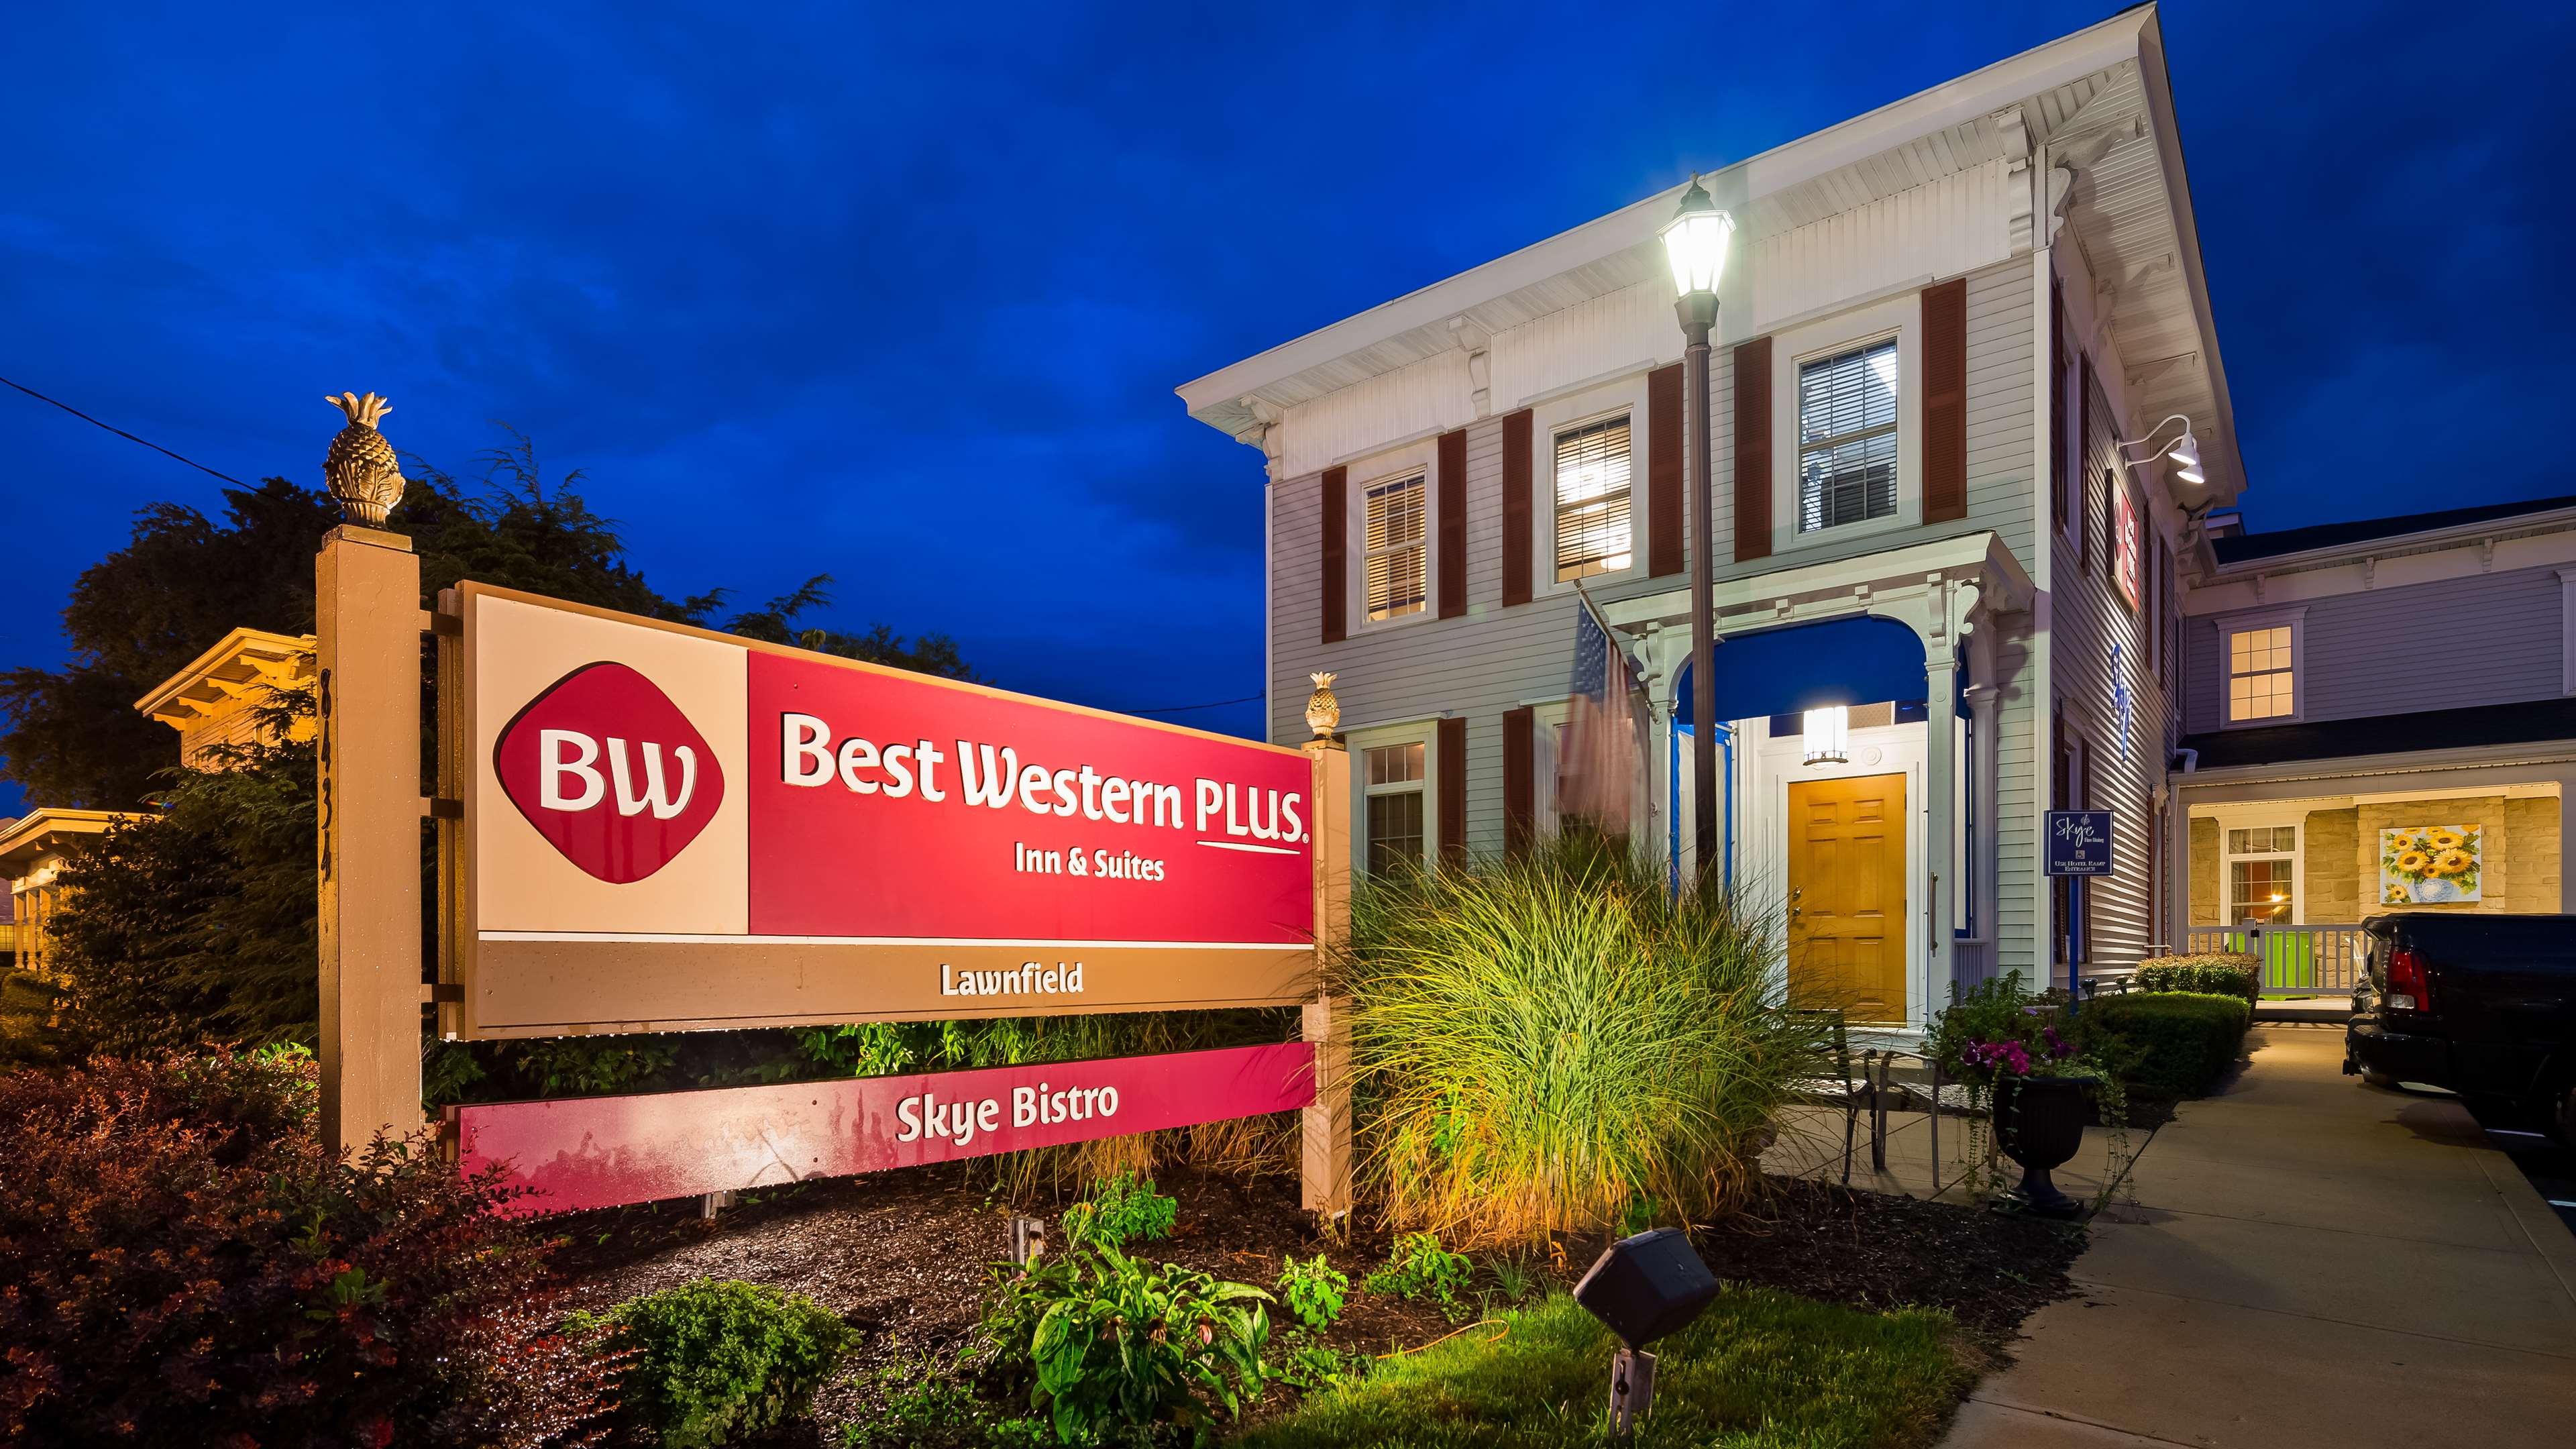 Best Western Plus Lawnfield Inn & Suites